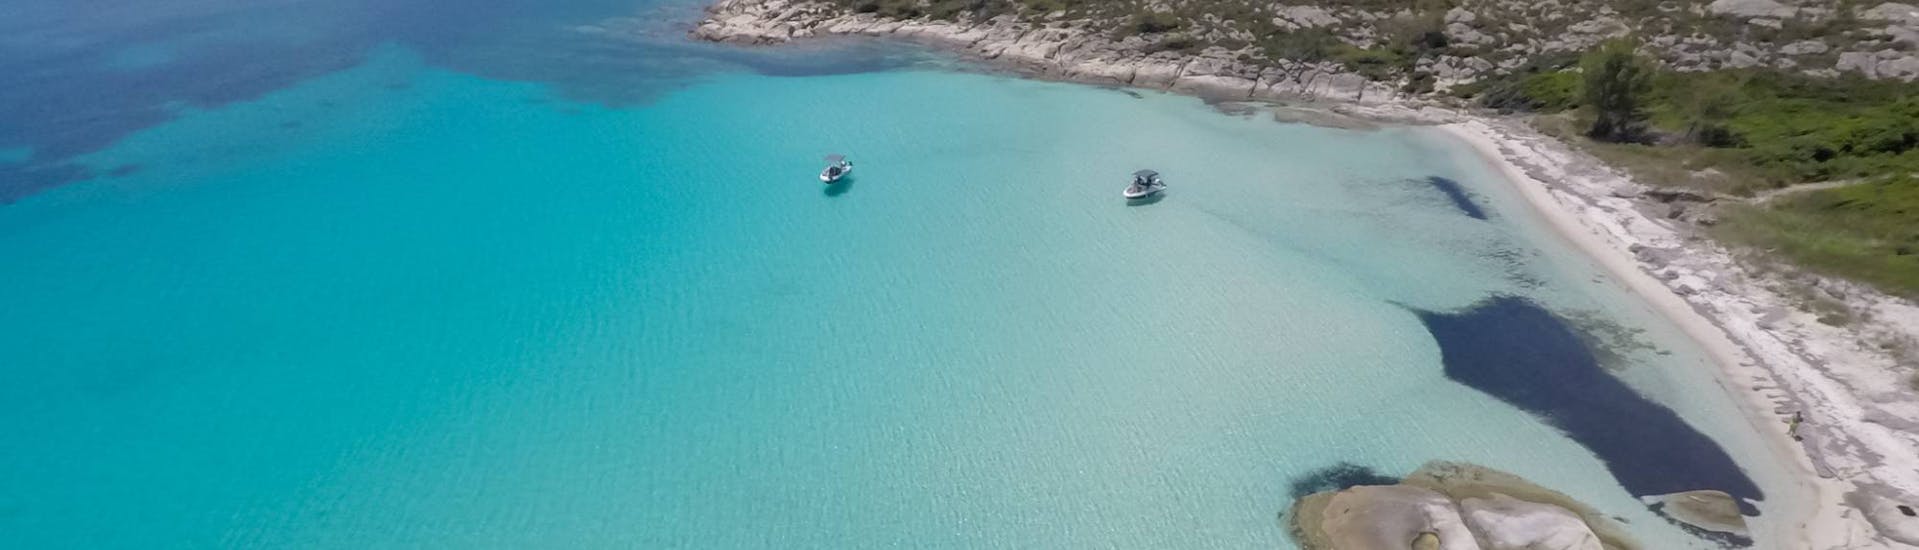 Una bellissima baia che può essere visitata durante il Noleggio barca a Ormos Panagias (fino a 8 persone) senza patente con Luxury Sport Cruise Halkidiki.